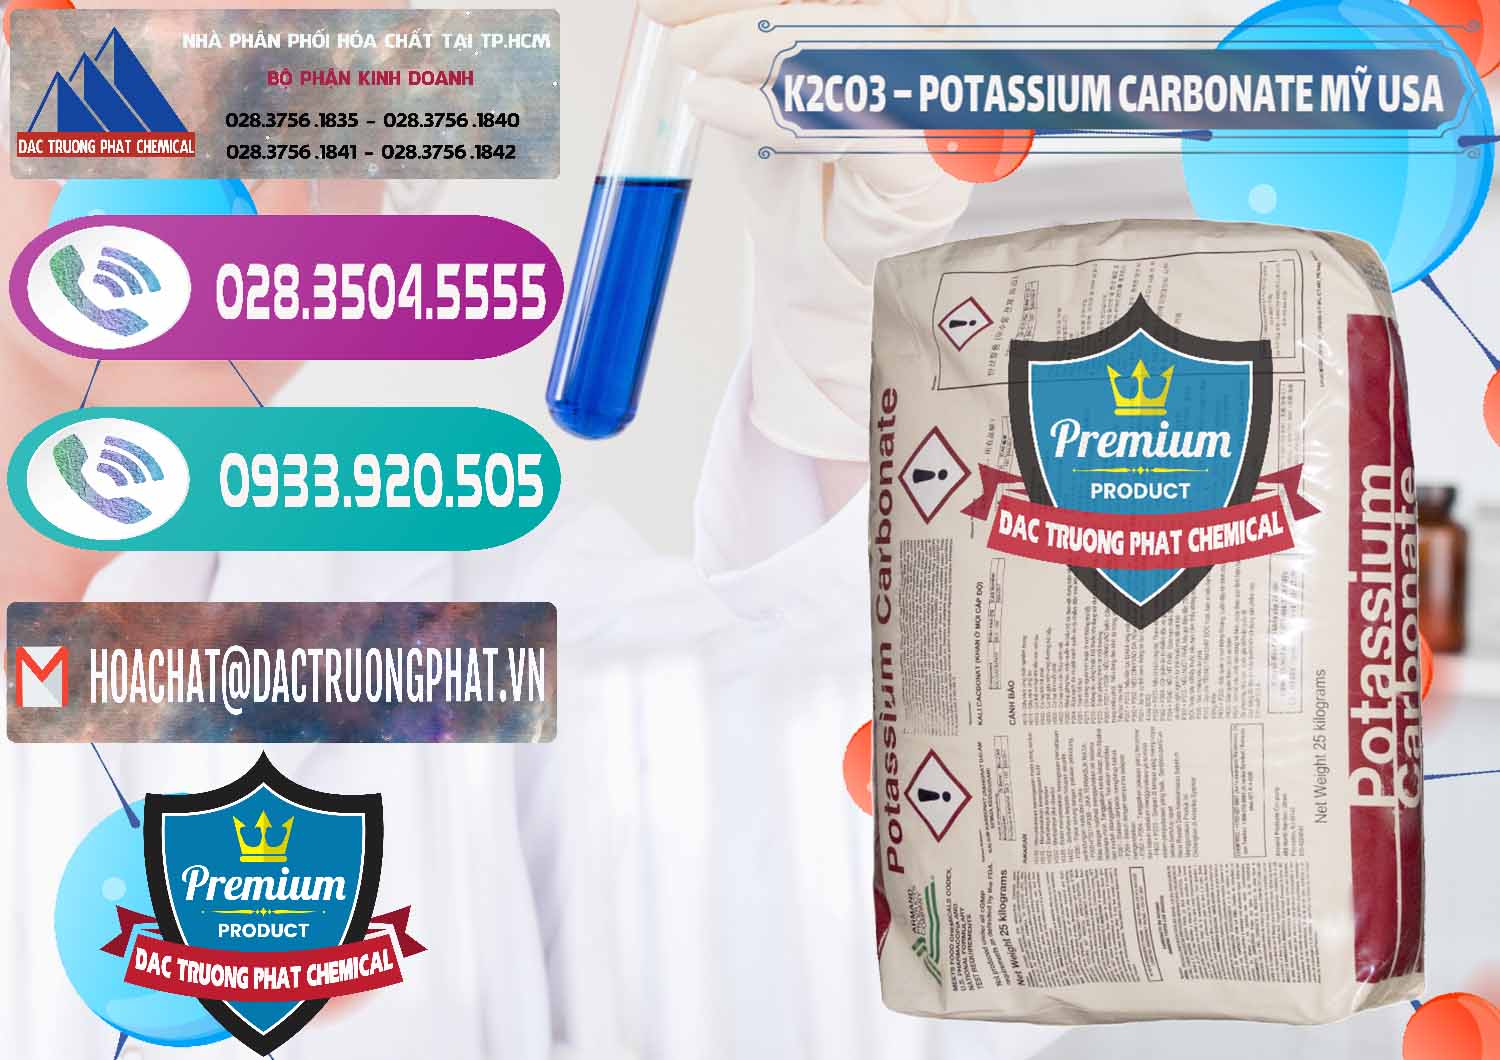 Chuyên bán _ cung cấp K2Co3 – Potassium Carbonate Mỹ USA - 0082 - Nhà cung cấp - nhập khẩu hóa chất tại TP.HCM - hoachatxulynuoc.com